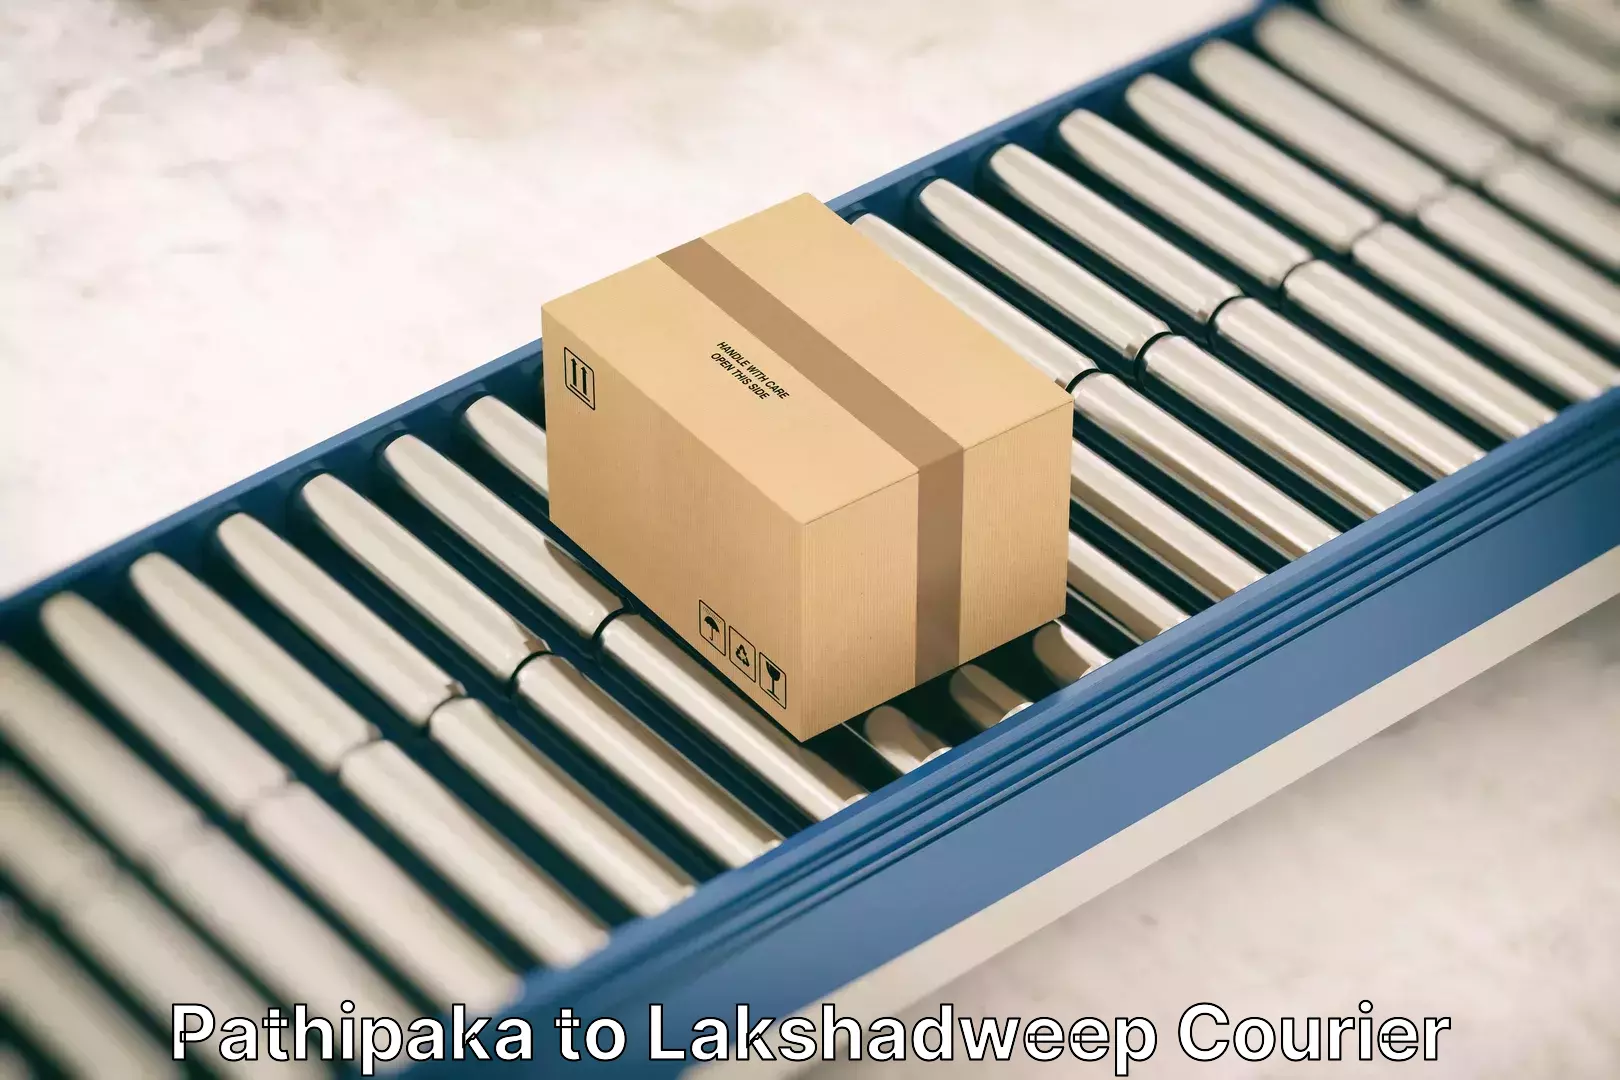 Full-service furniture transport Pathipaka to Lakshadweep